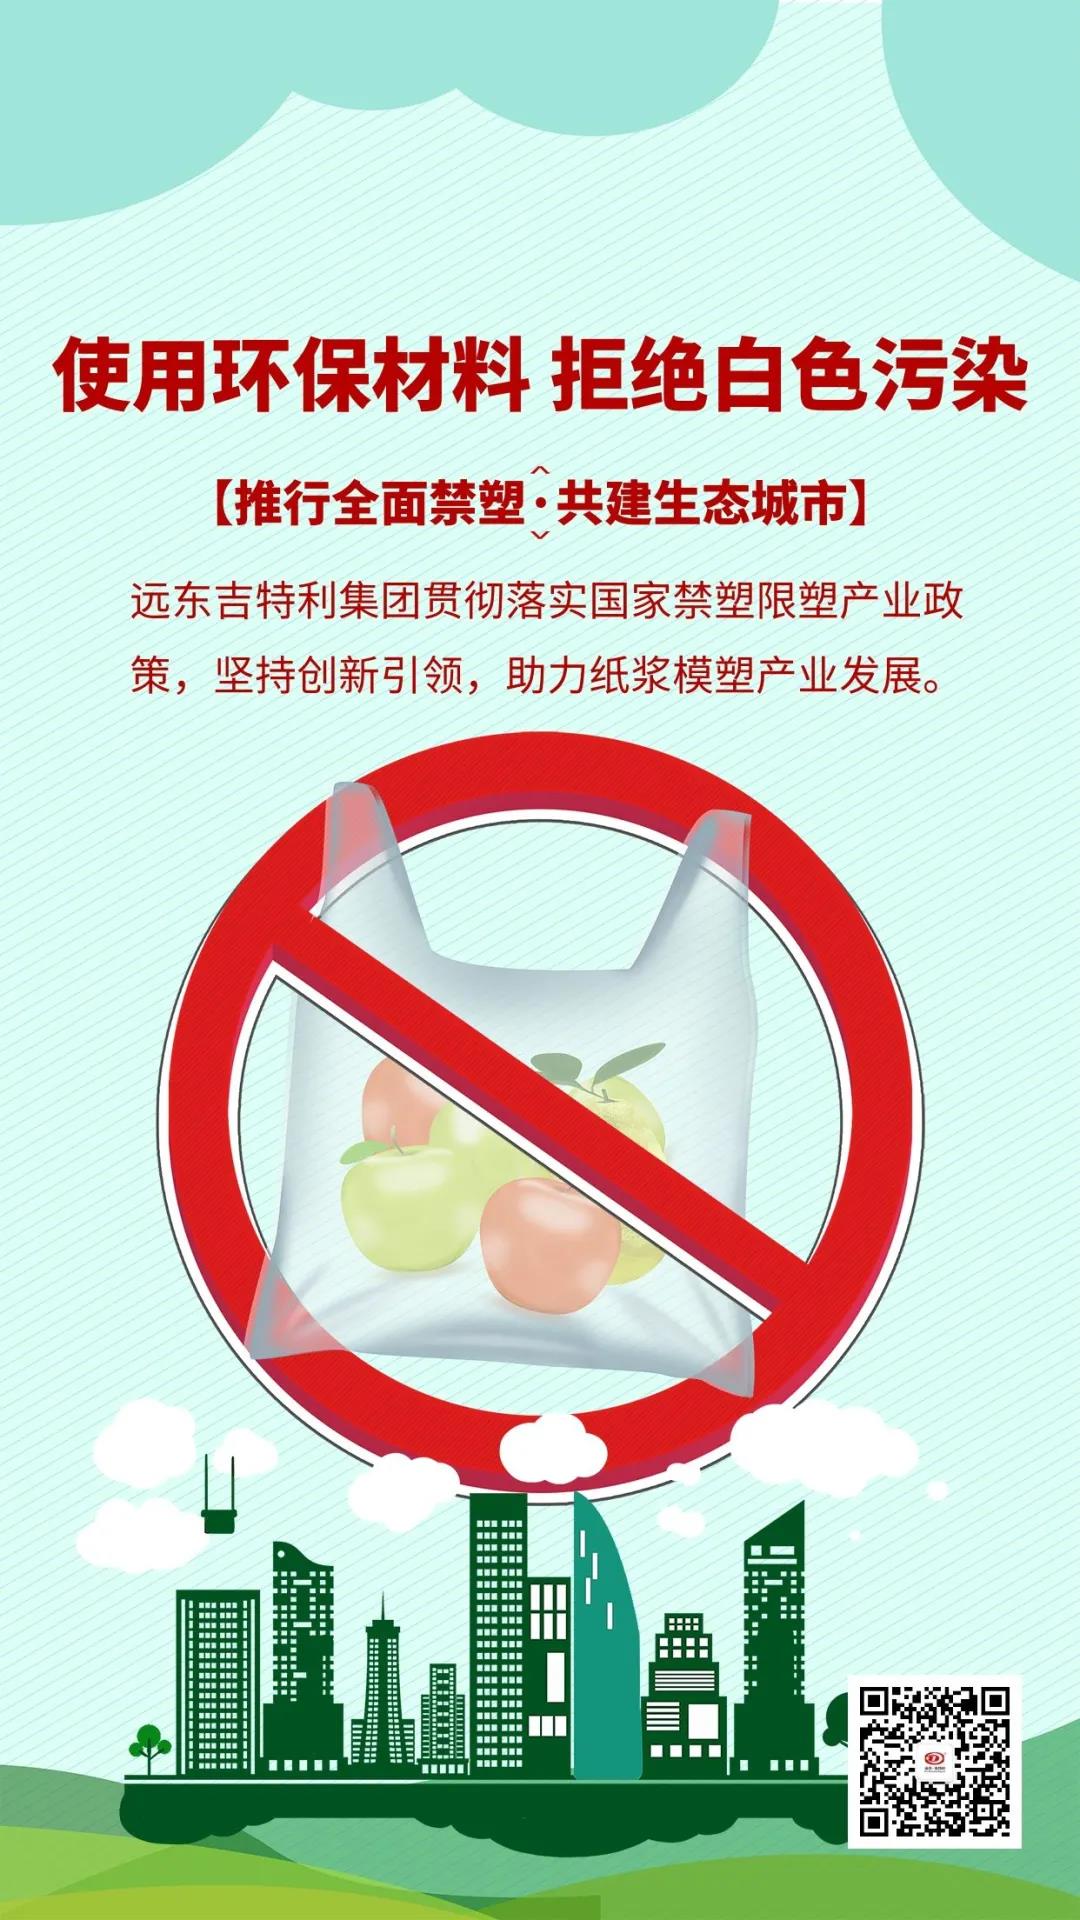 Návrh na zákaz plastů, zastáváte obaly potravin z lisování celulózy z biodegradovatelné cukrové třtiny!